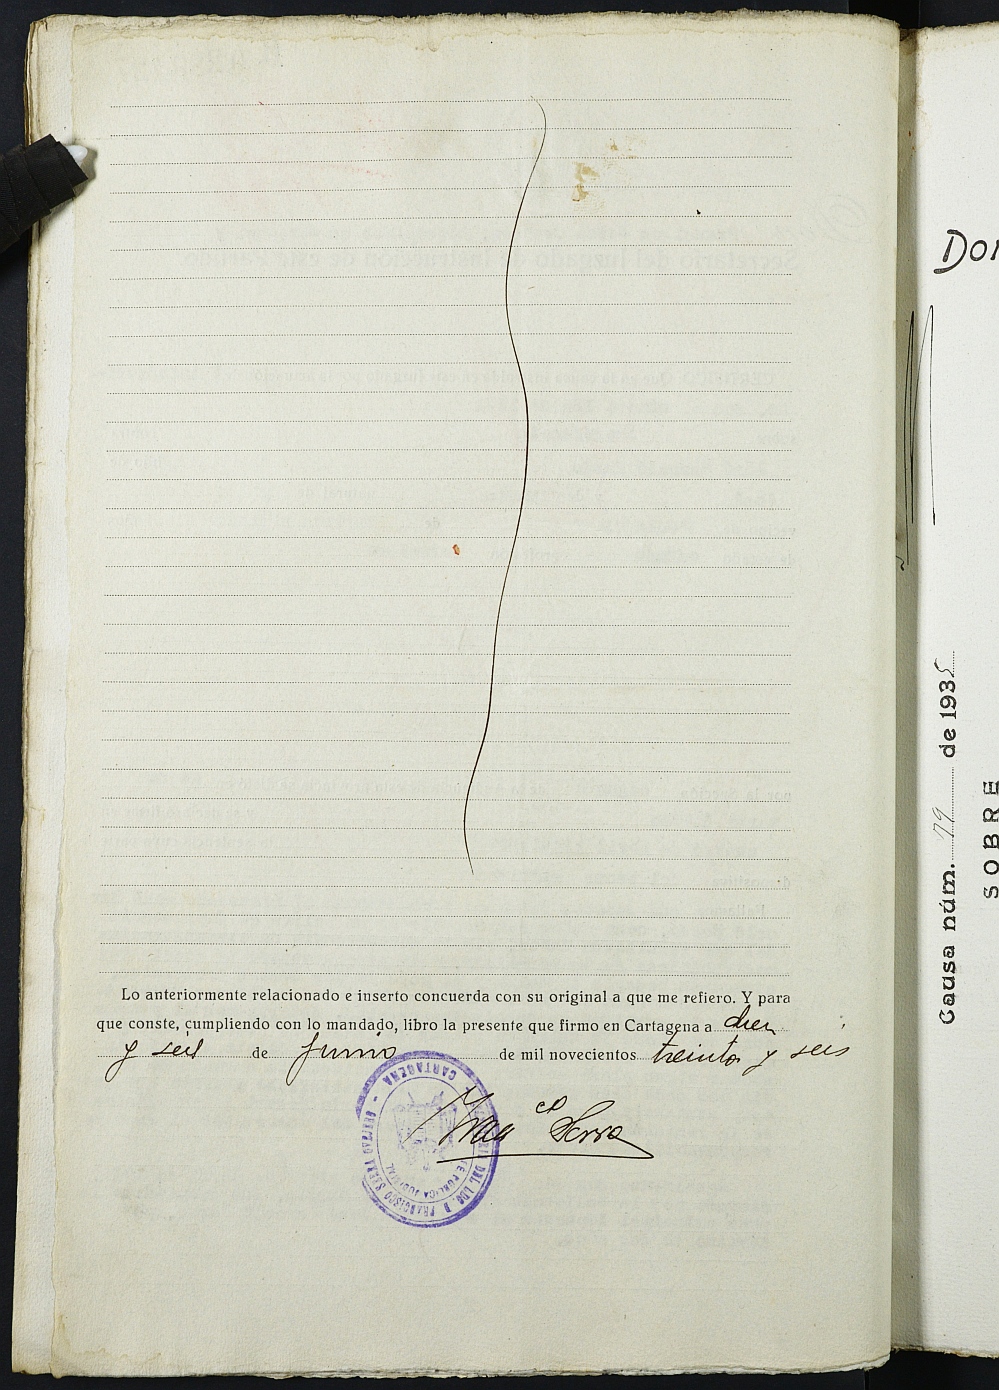 Registro de penados del Juzgado Municipal del Distrito de San Juan de Murcia. Años 1936 a 1942.